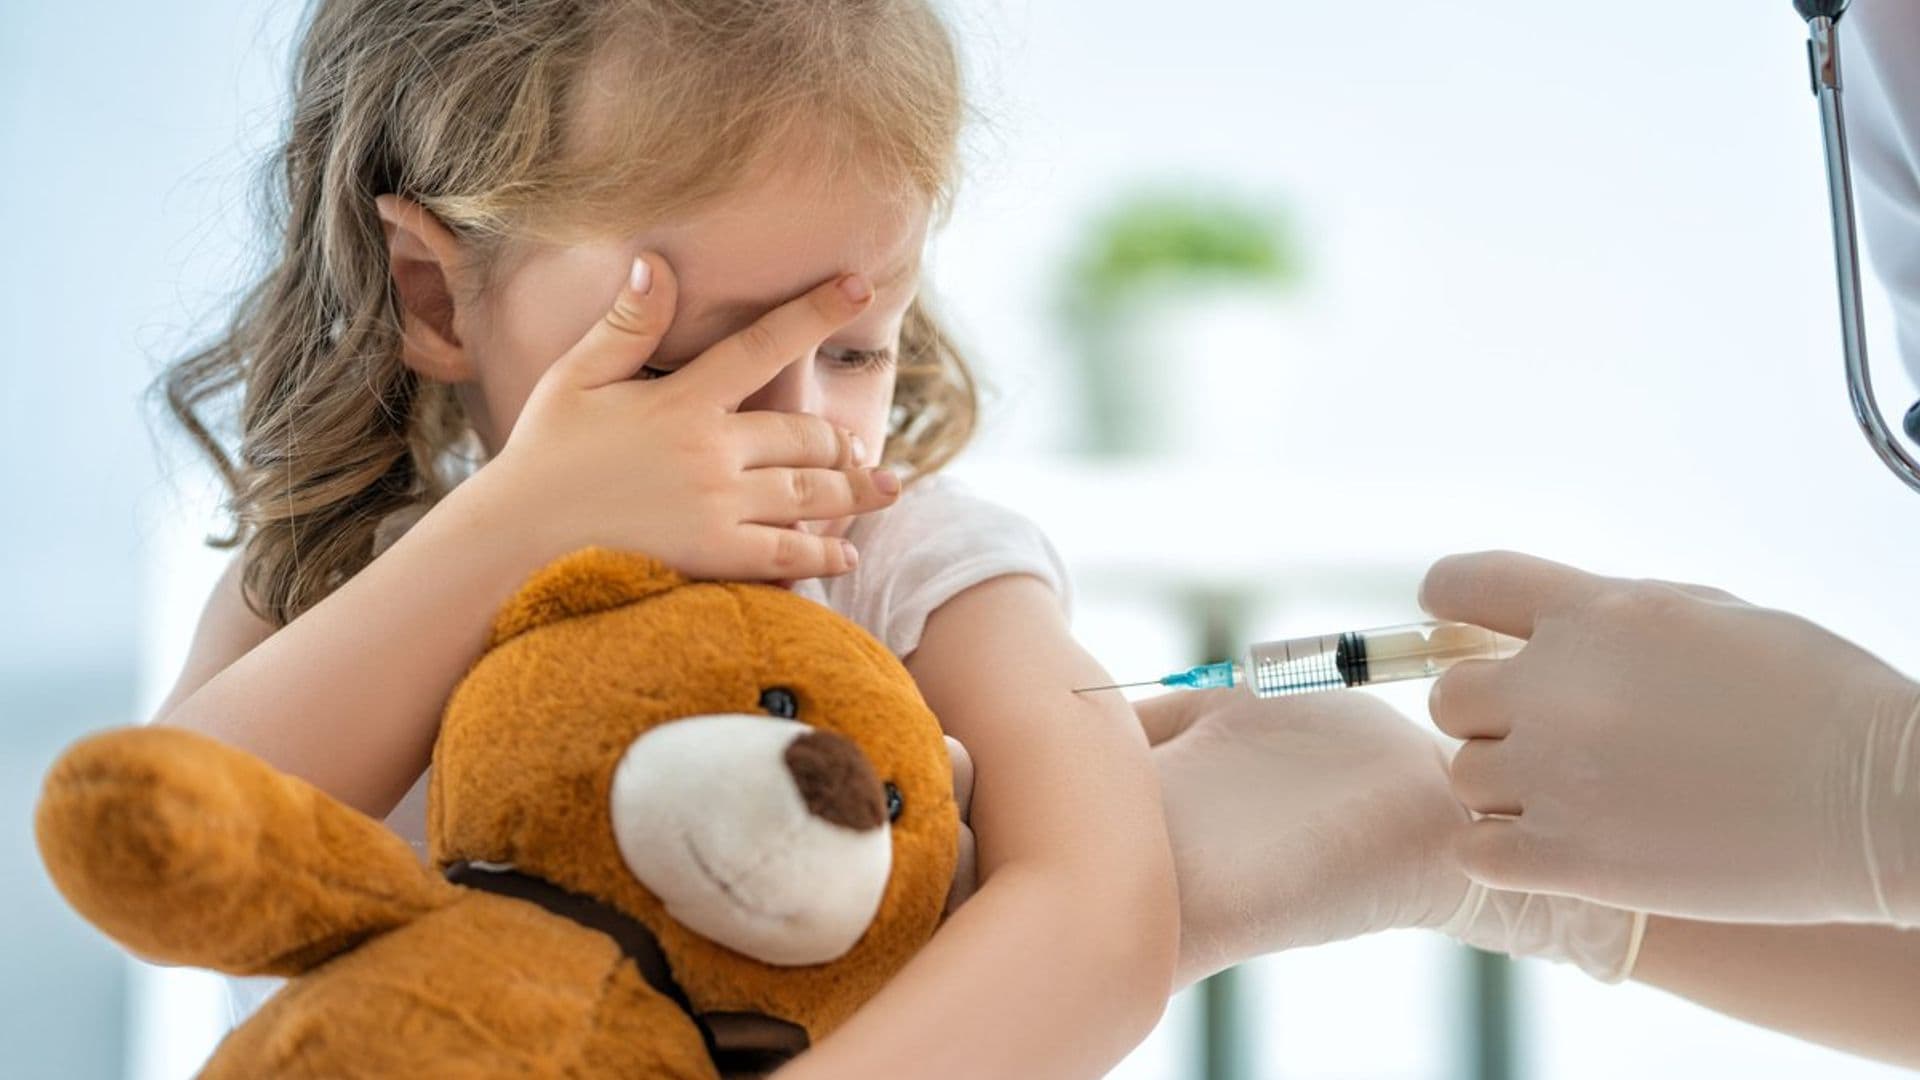 Virus y vacunas, ¿quieres saber cómo explicarle estos conceptos a tus hijos?